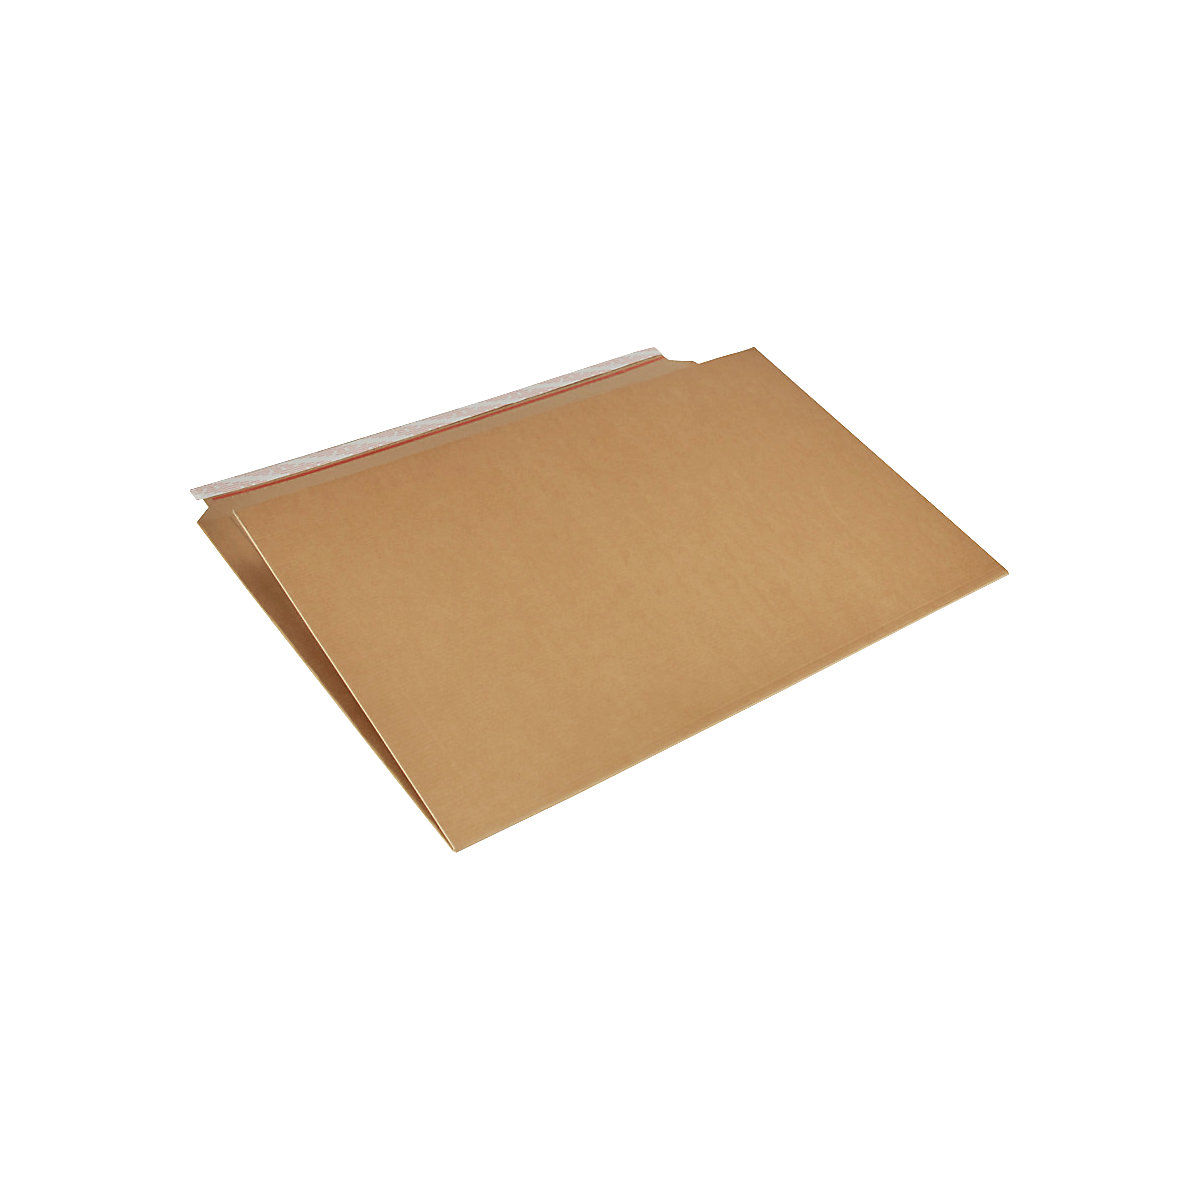 Imballaggio per libri Multistar – flow, marrone, lungh. x largh. 770 x 520 mm, a partire da 40 pz.-3